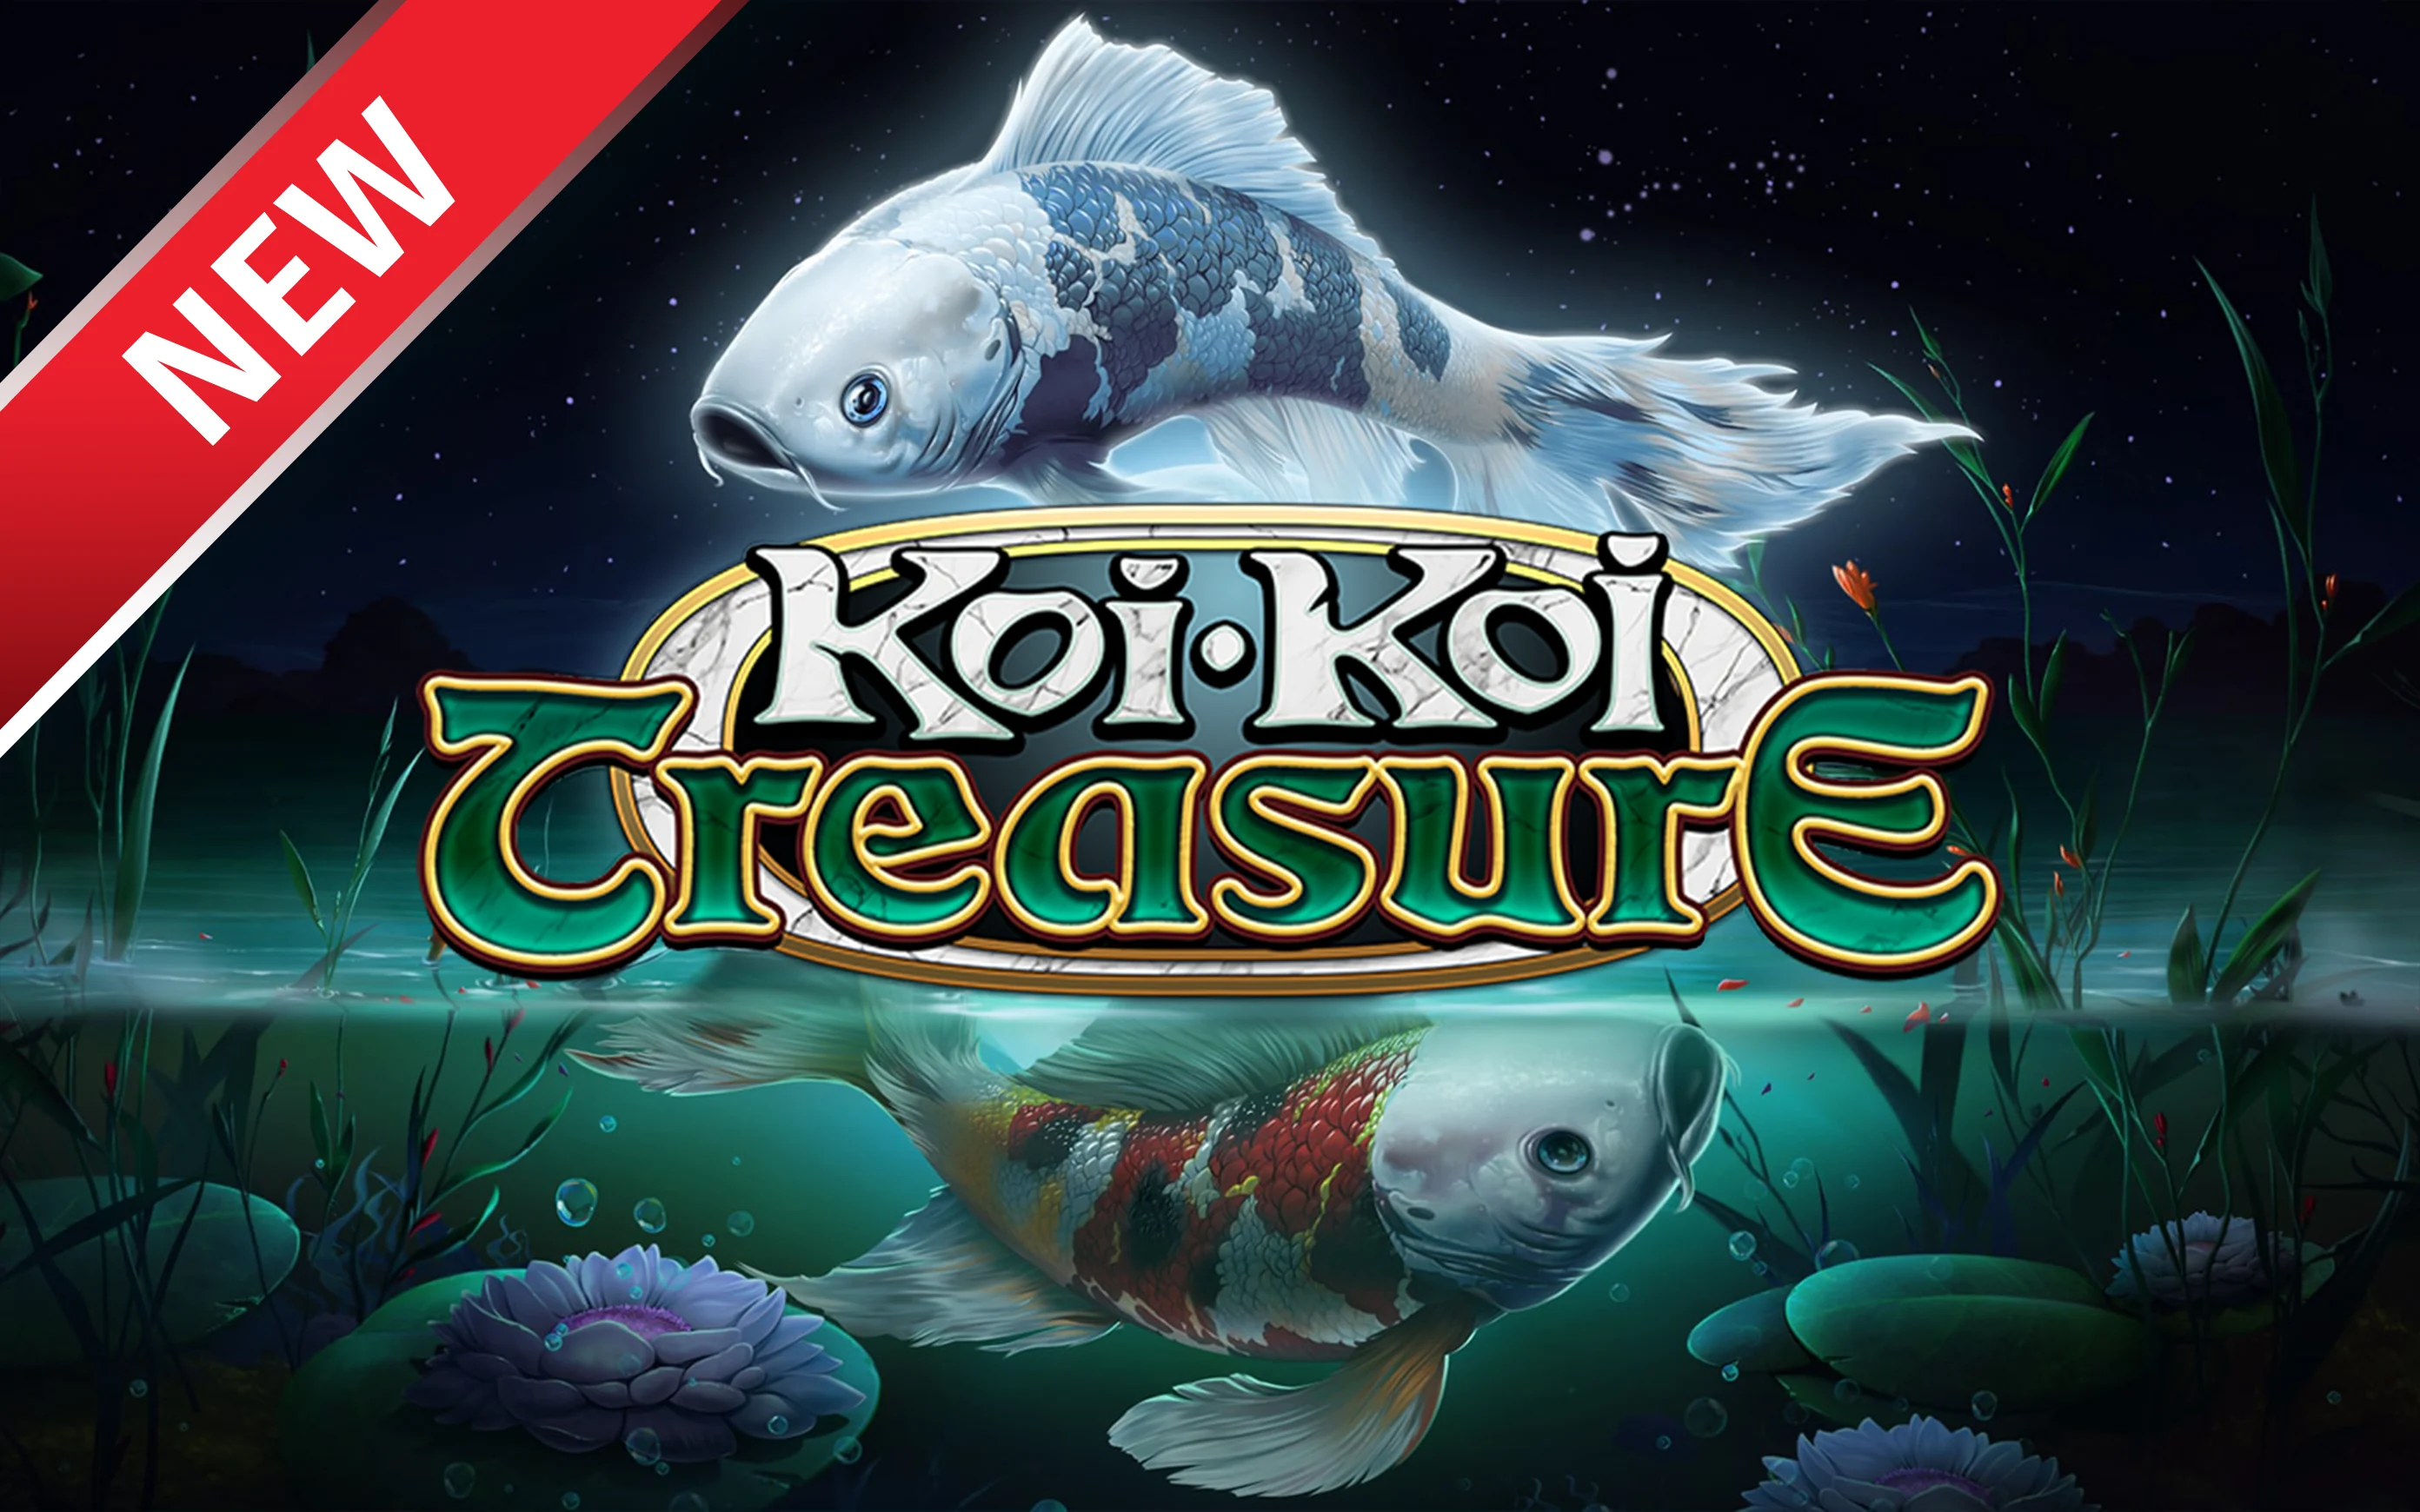 Speel Koi-Koi Treasure op Starcasino.be online casino